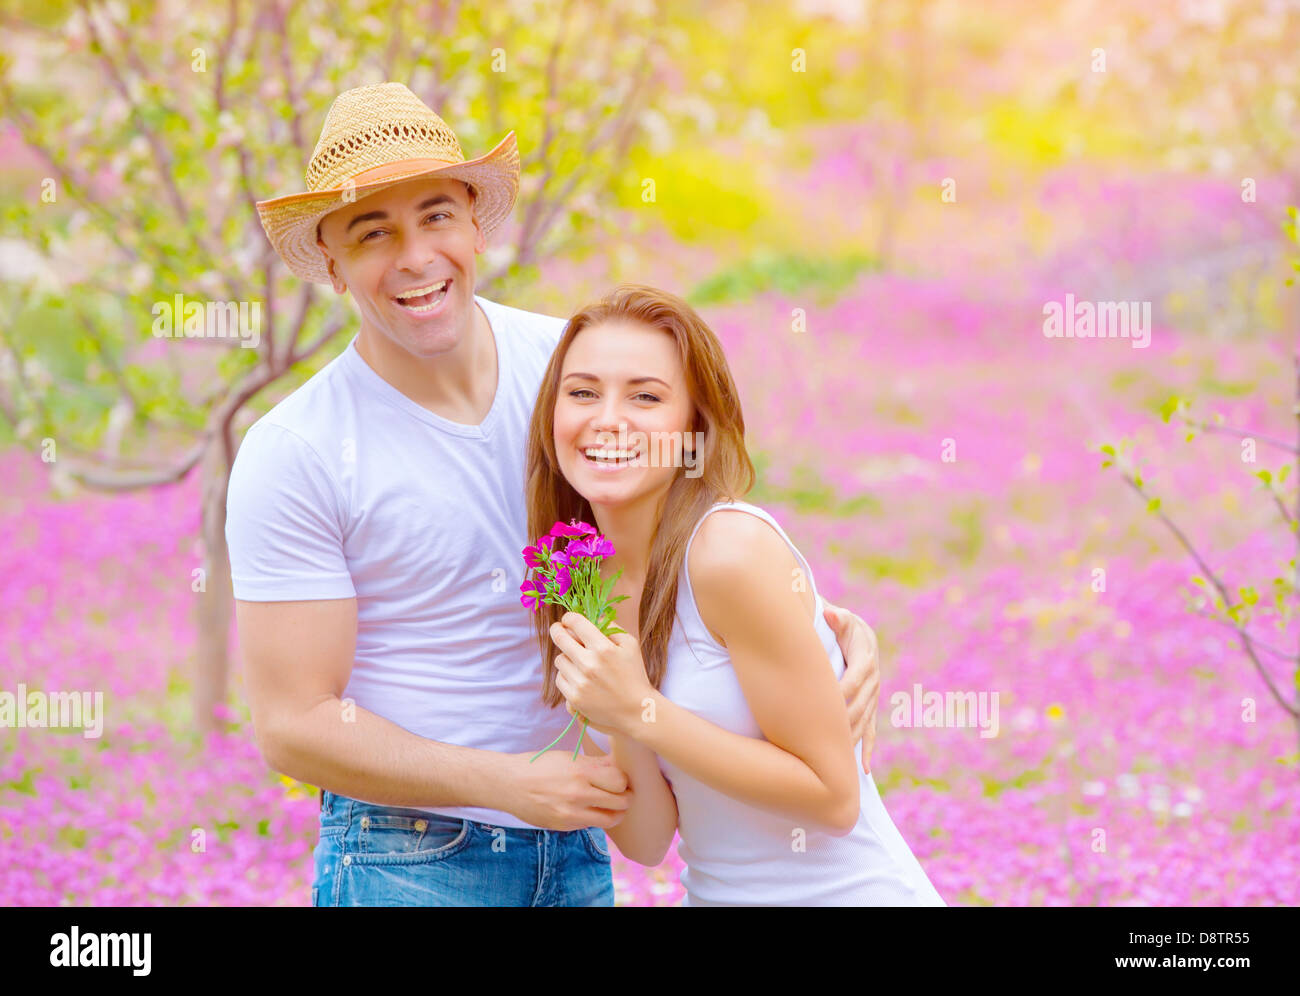 Glücklich lächelnde Paare, die Spaß im Sommerpark, Entspannung im Freien auf pink floral Lichtung, Romantik und Liebe Konzept Stockfoto